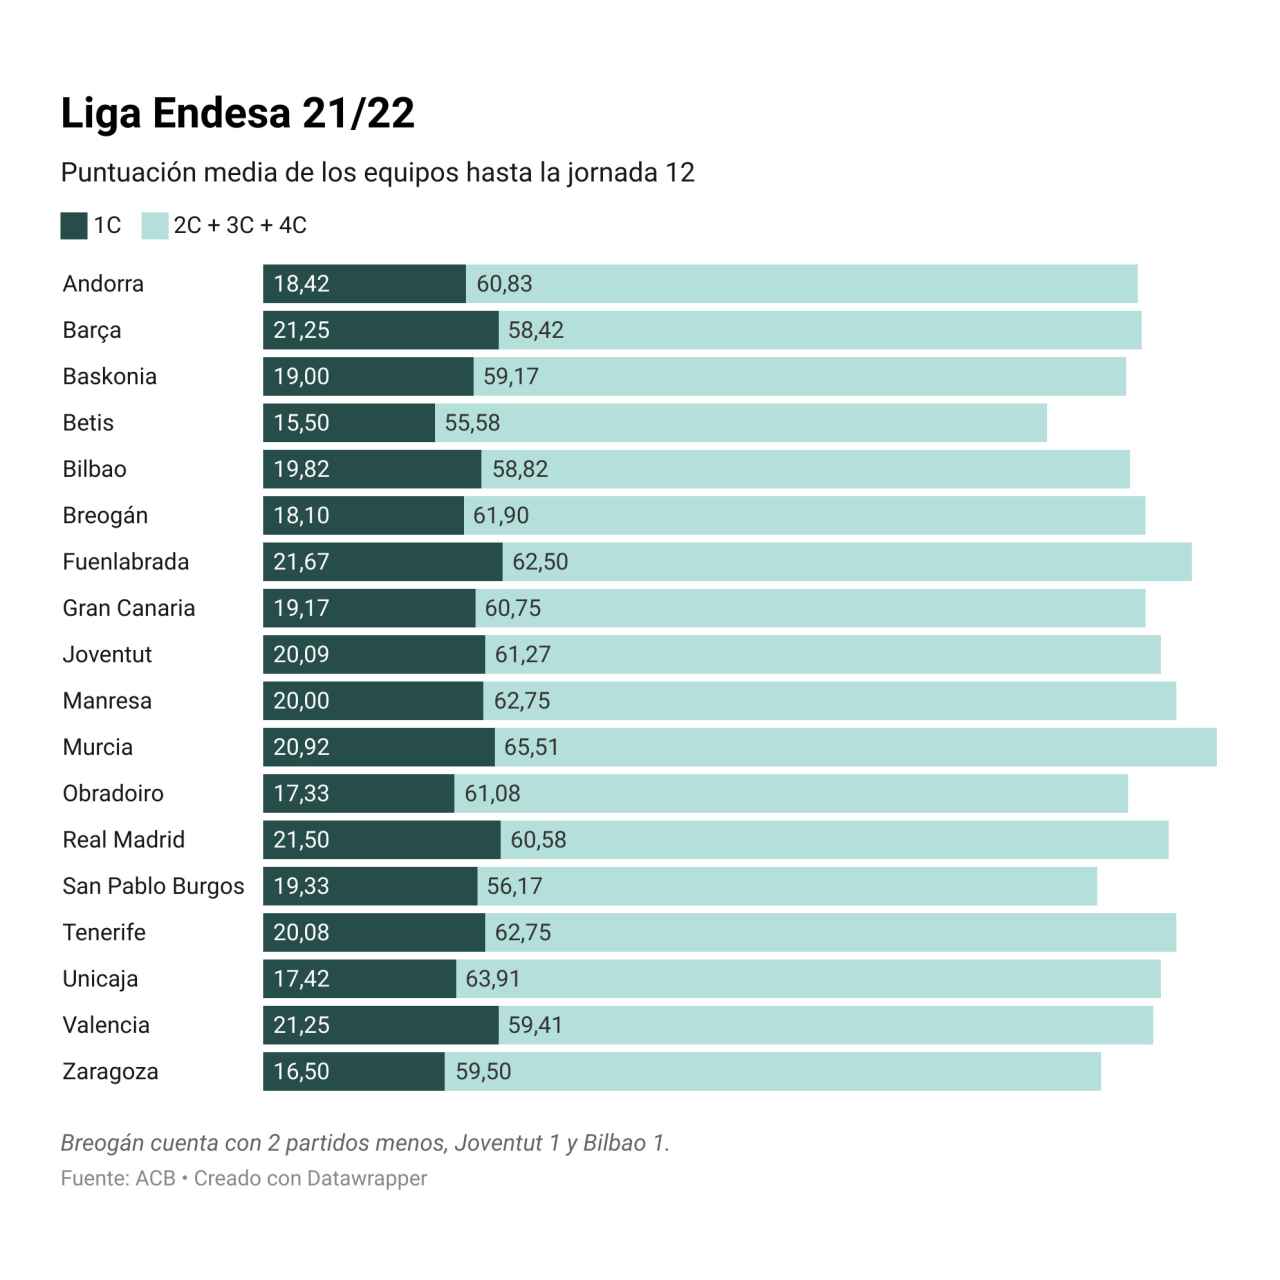 Puntuación media de los equipos en Liga Endesa con especial atención al primer cuarto.